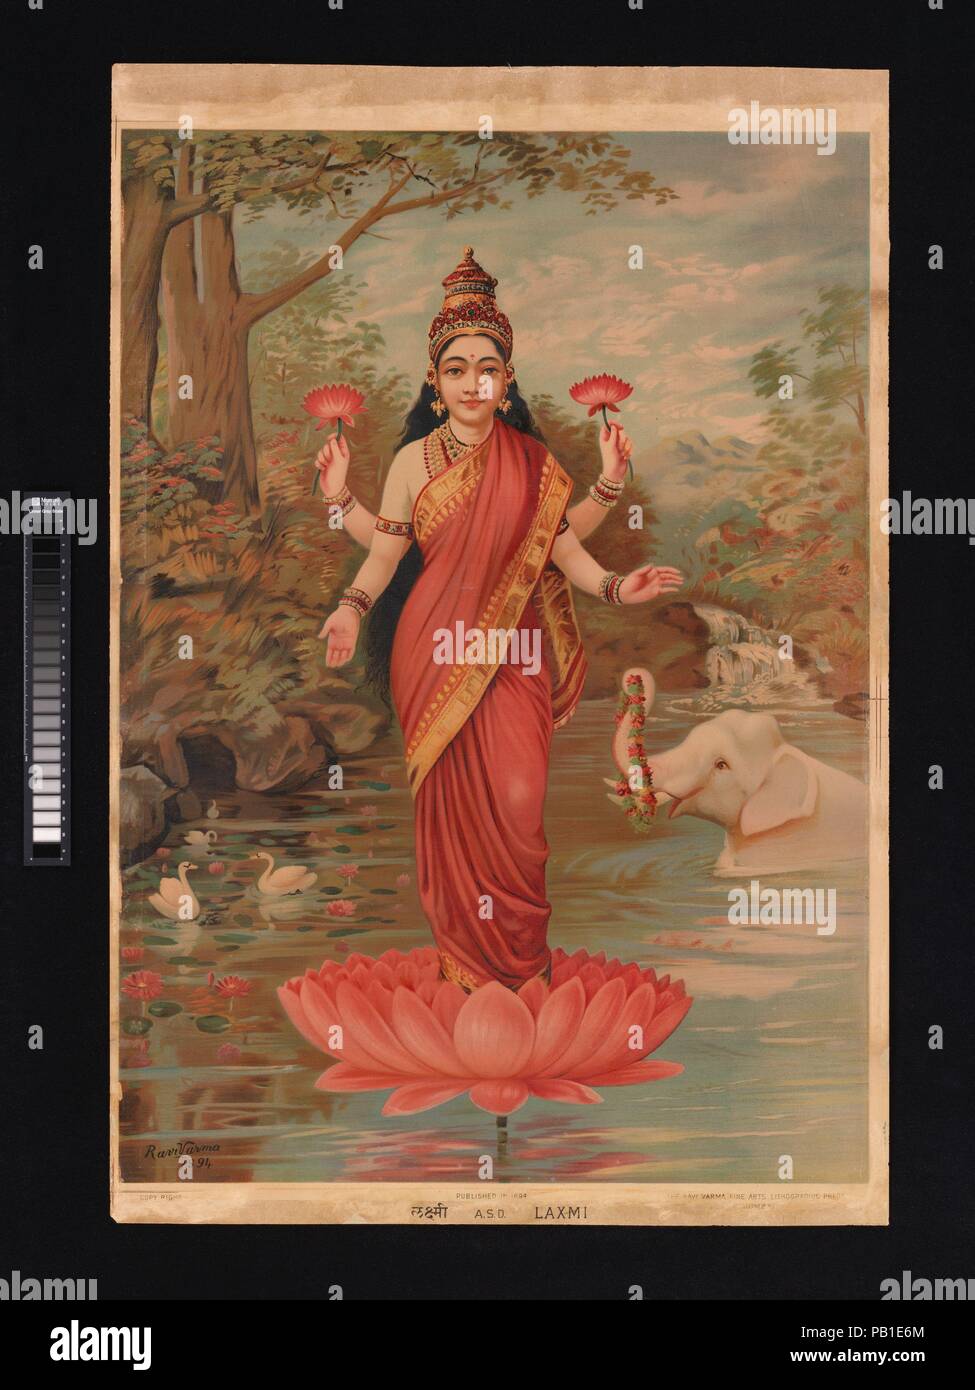 Lakshmi. Culture : l'Inde. Dimensions : Image : 28 × 20 1/8 in. (71,4 × 50,8 cm) feuille : 30 3/4 x 25 7/8 in. (78,1 × 65,7 cm). Date : 1894. Lakshmi debout sur un lotus est peut-être l'exemple le plus connu de tous les début de lithographies de dieux hindous. C'est en partie à cause de la renommée de Ravi Varma et le fait qu'il produit des images de grande qualité, mais c'est également le résultat de son tirage ; beaucoup de versions simplifiées de cette gravure, continue d'être produit dans les années 1920. Ravi Varma fondé cette impression sur une série de peinture à l'huile qu'il a fait pour divers clients ; l'un d'eux est en ce moment à l'écran Banque D'Images